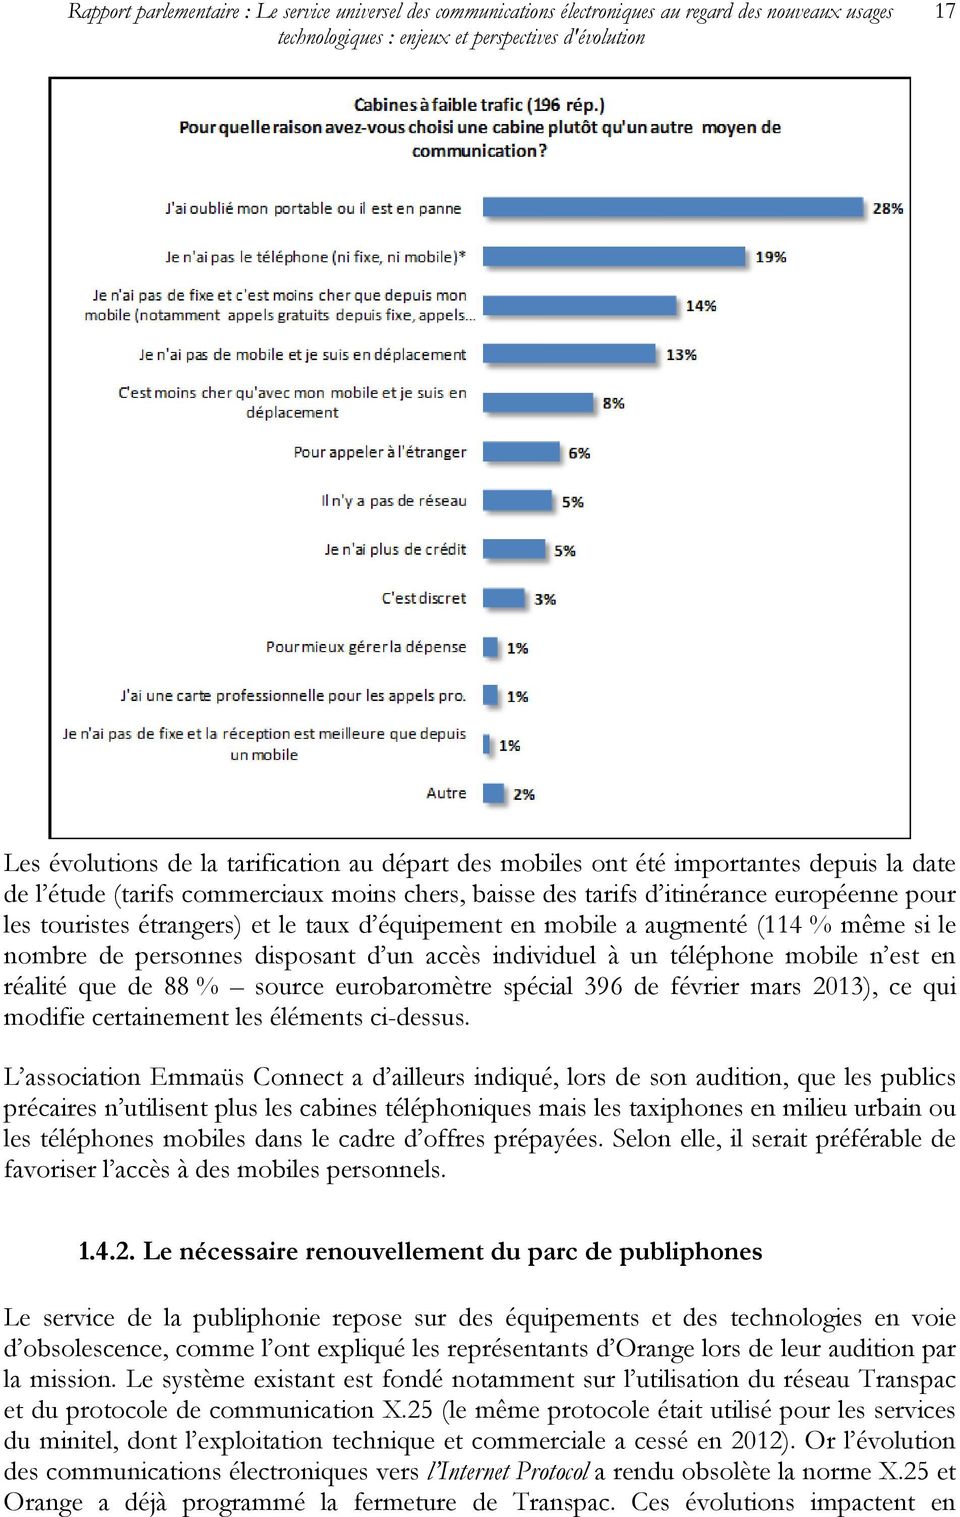 personnes disposant d un accès individuel à un téléphone mobile n est en réalité que de 88 % source eurobaromètre spécial 396 de février mars 2013), ce qui modifie certainement les éléments ci-dessus.